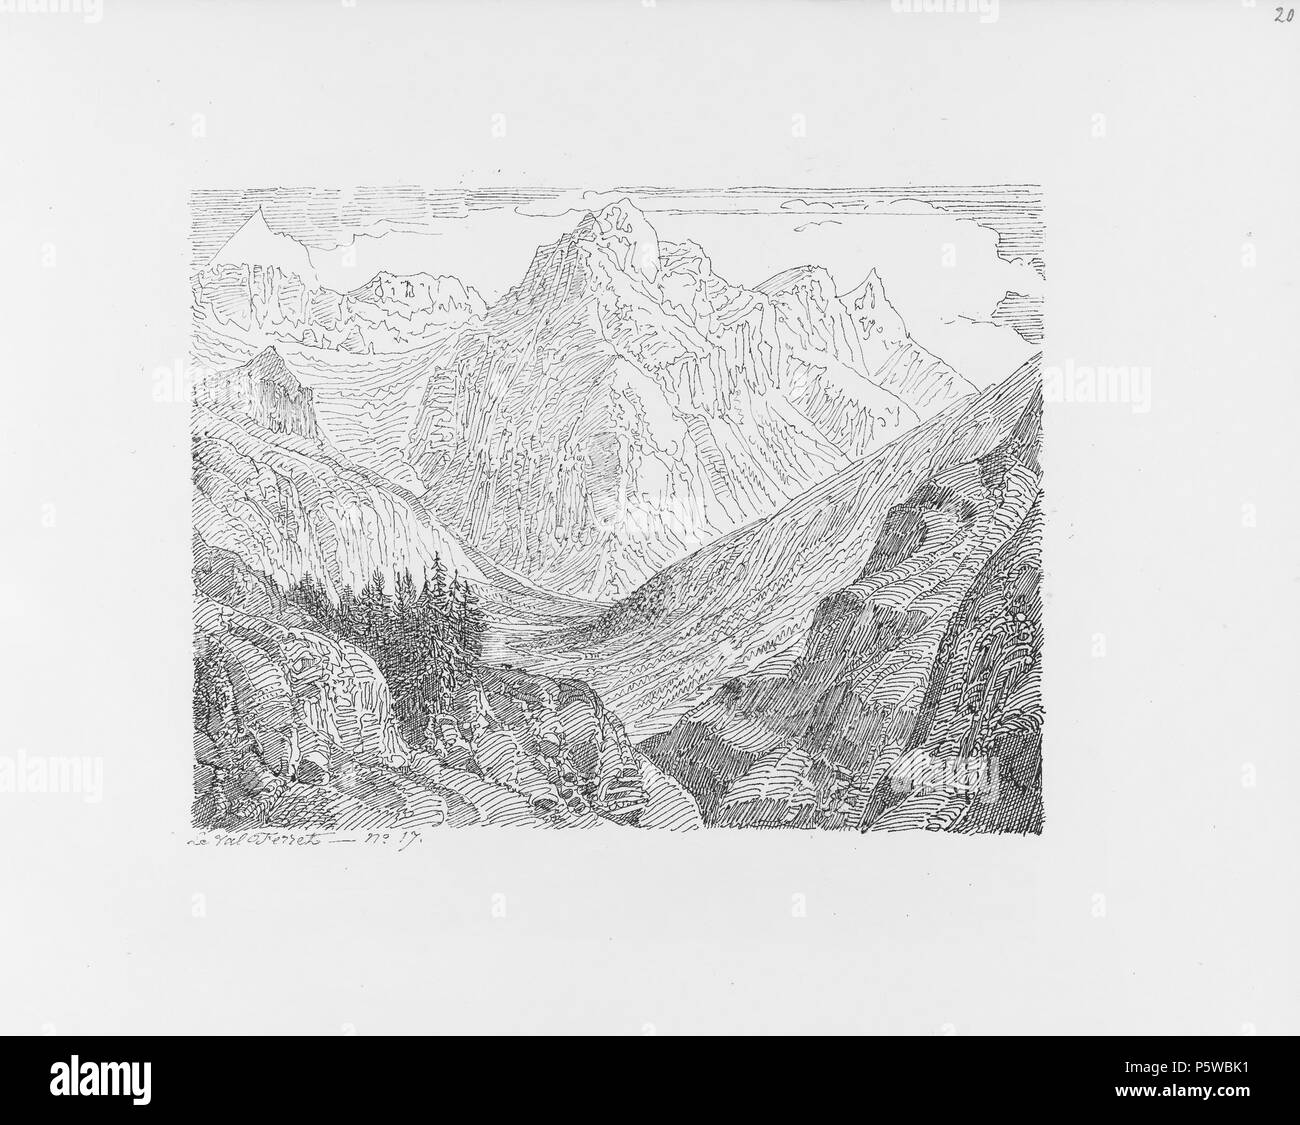 322 CH-NB-Voyage autour du Mont-Blanc dans les vallées d'Hérens de Zermatt et au Grimsel 1843-nbdig-19161-019 Stock Photo